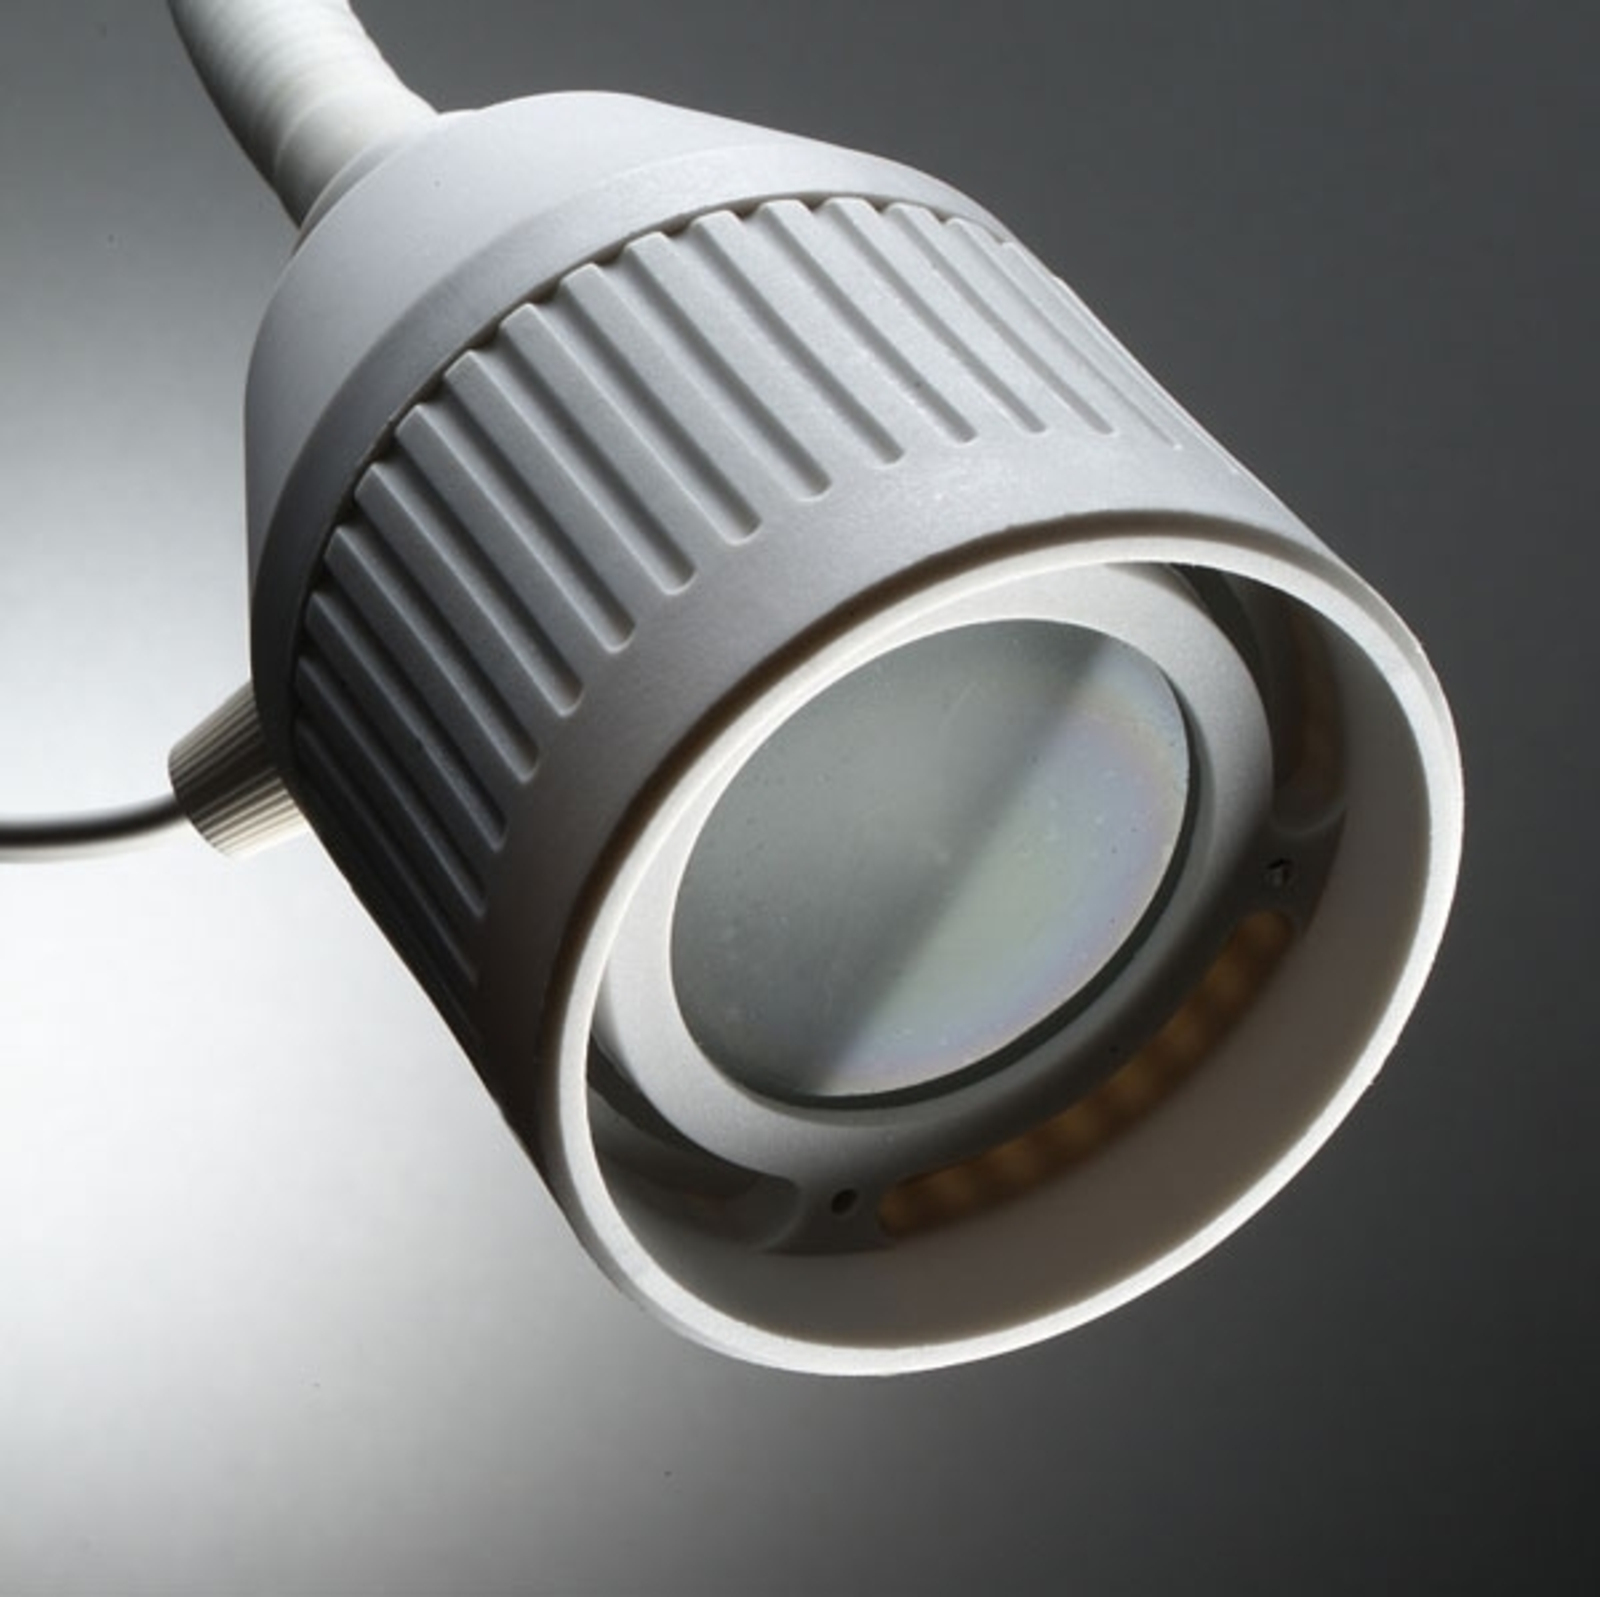 LED-läslampa med flexibel arm och rött ljus